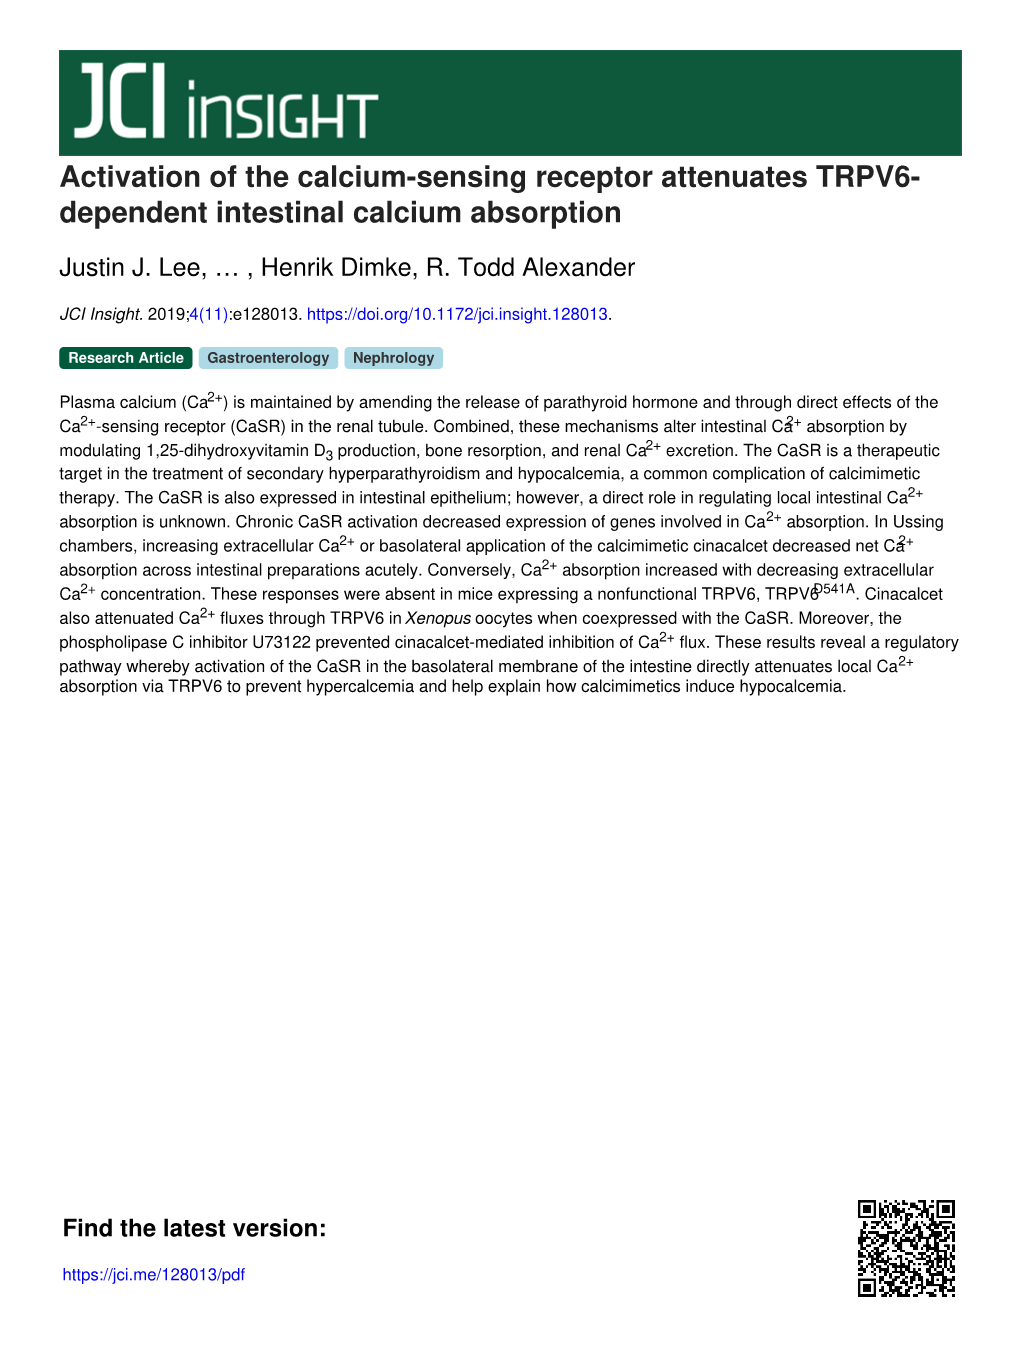 Activation of the Calcium-Sensing Receptor Attenuates TRPV6- Dependent Intestinal Calcium Absorption